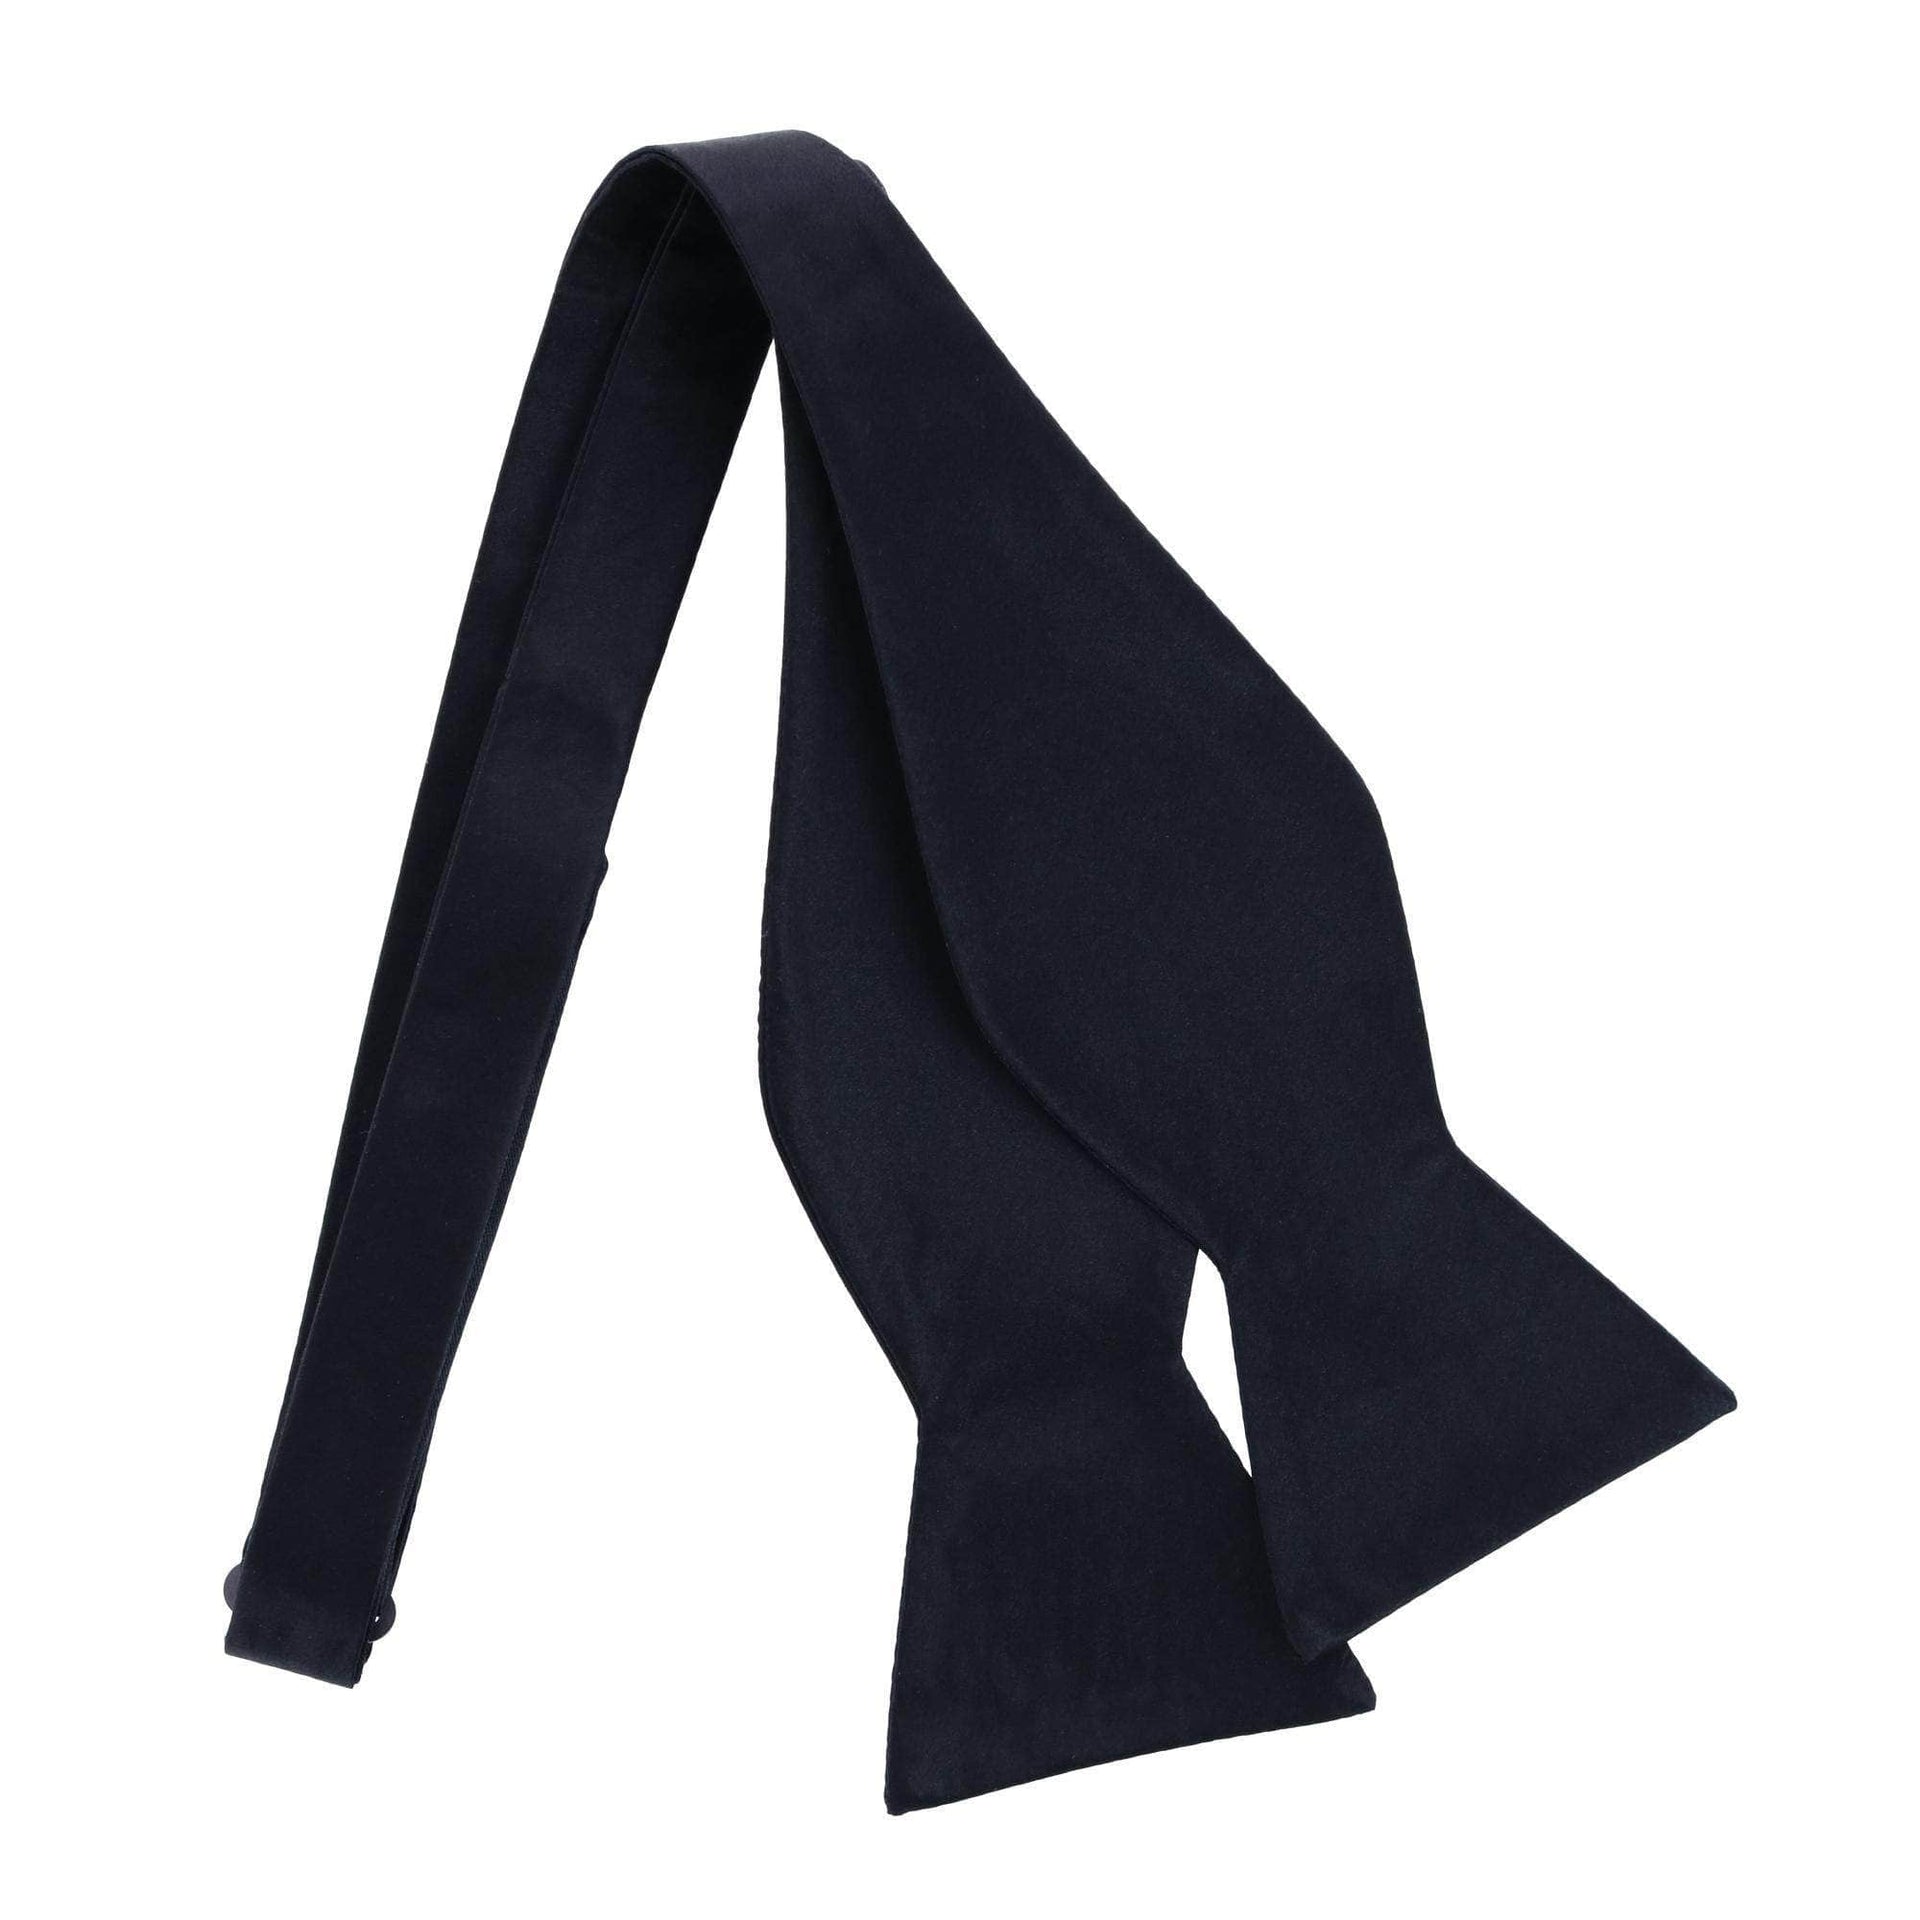 Sutton Solid Color Silk Self-Tie Bow Tie by Trafalgar Men's Accessories